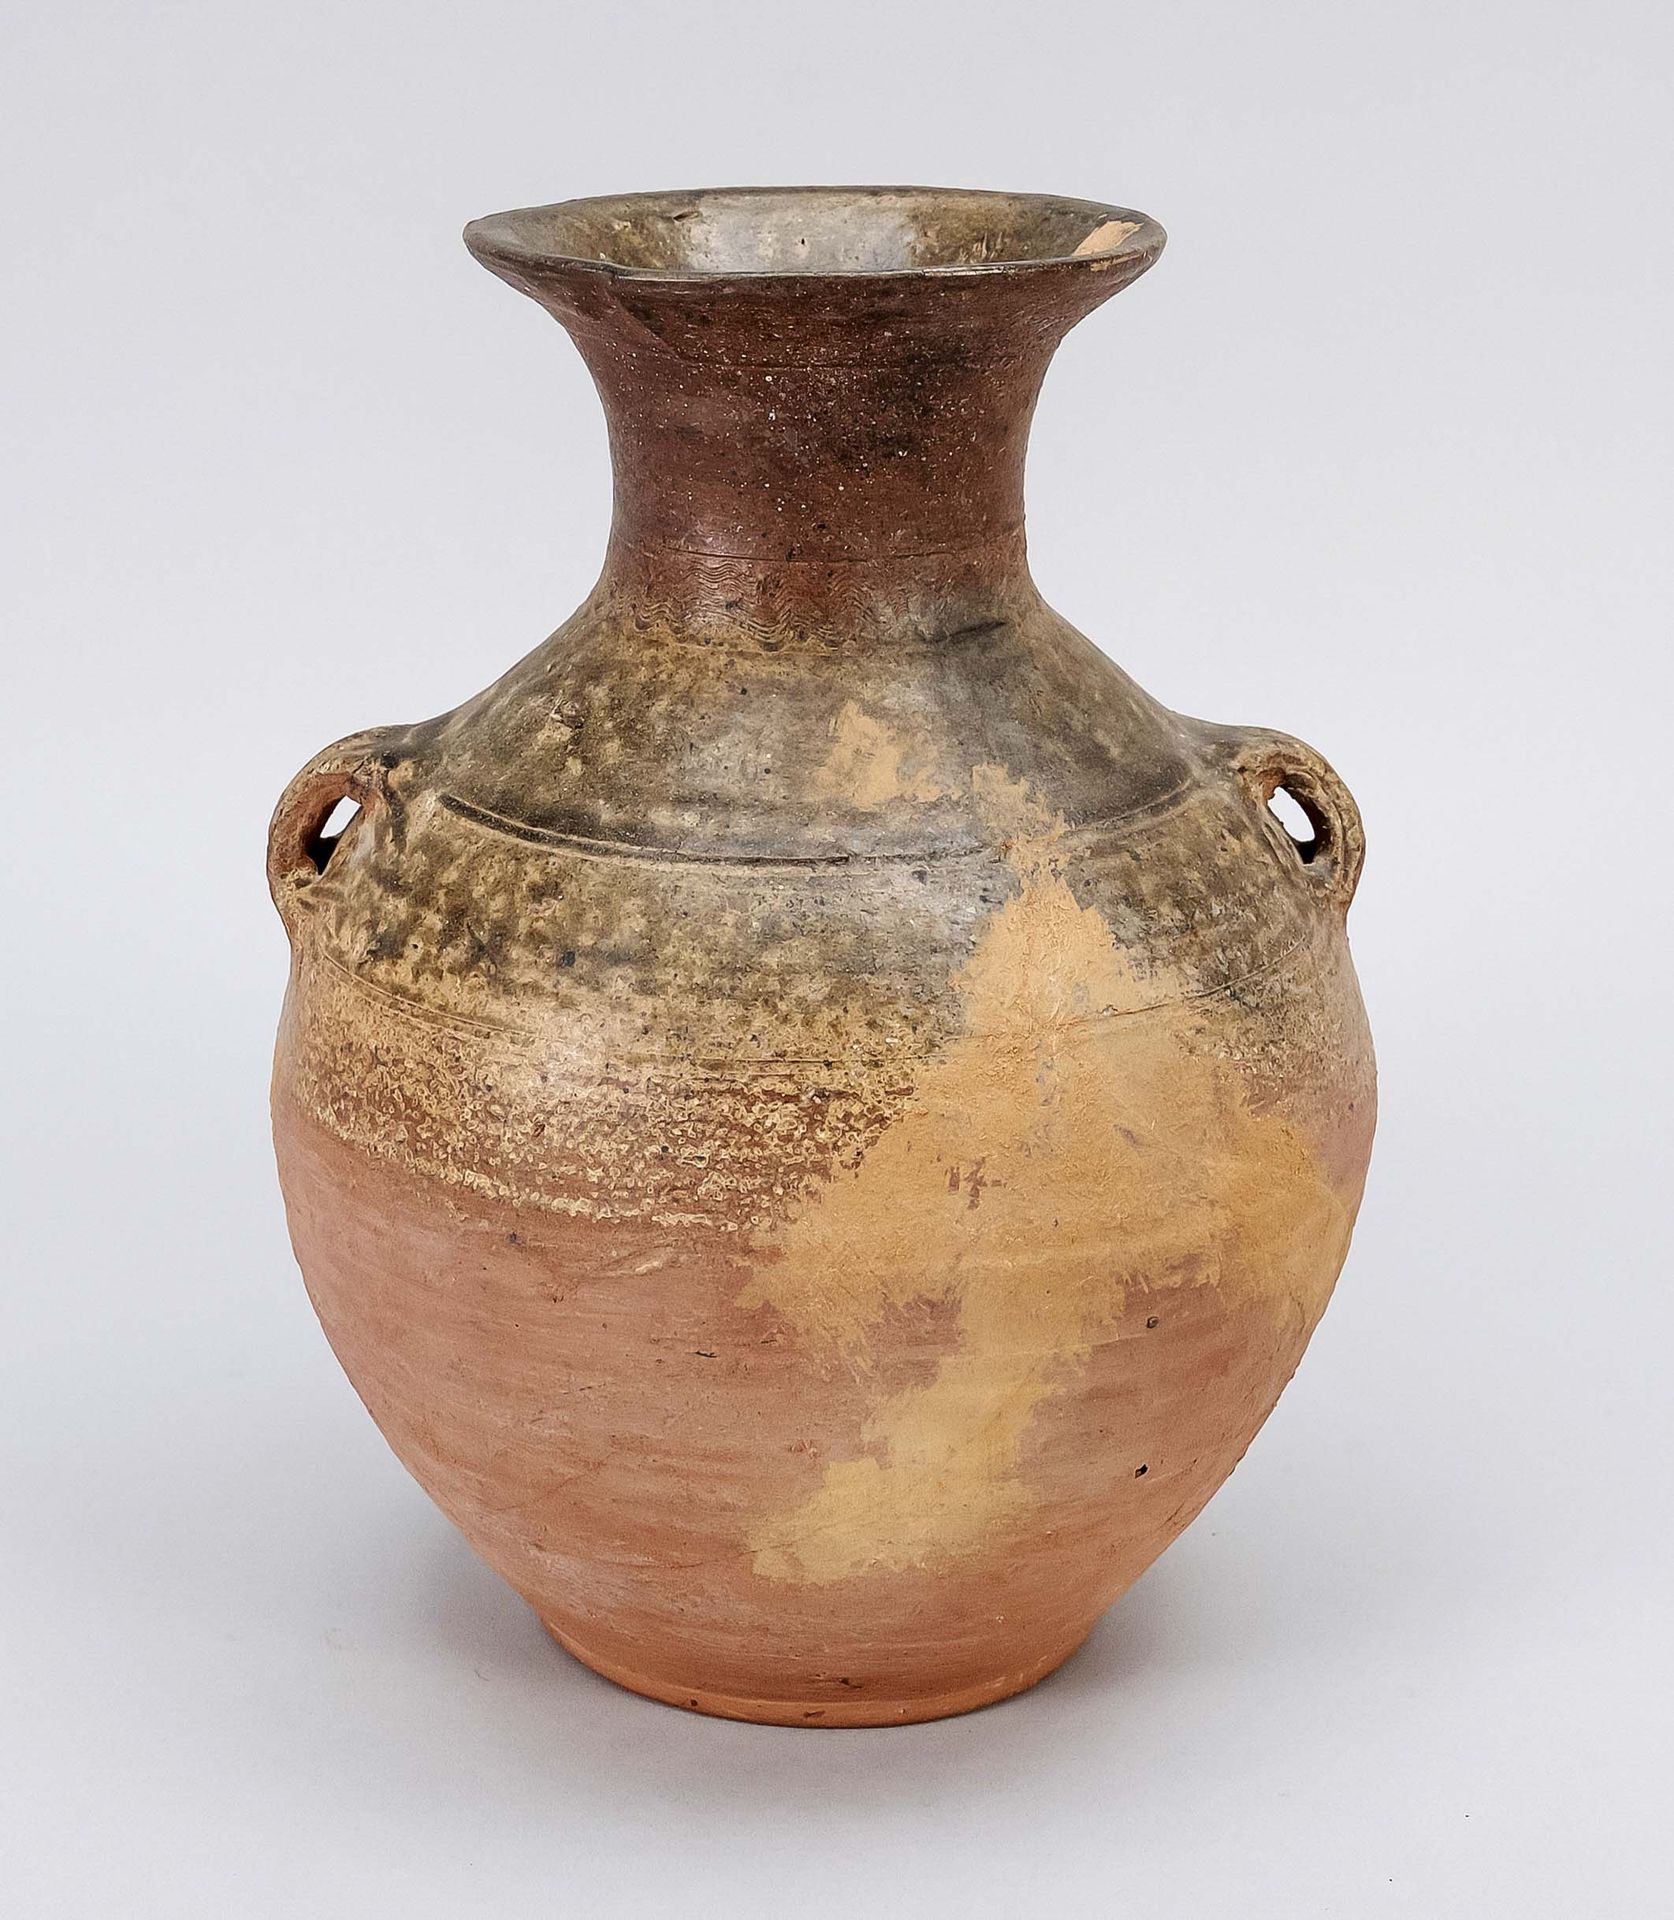 Null 腹式花瓶，中国，大概是公元3-6世纪，腹式花瓶有凸出的口和两个孔眼把手，长石质陶器，带绿色的釉和灰的色调，颈部有梳子的图案，下半身无釉，高26厘米，宽&hellip;